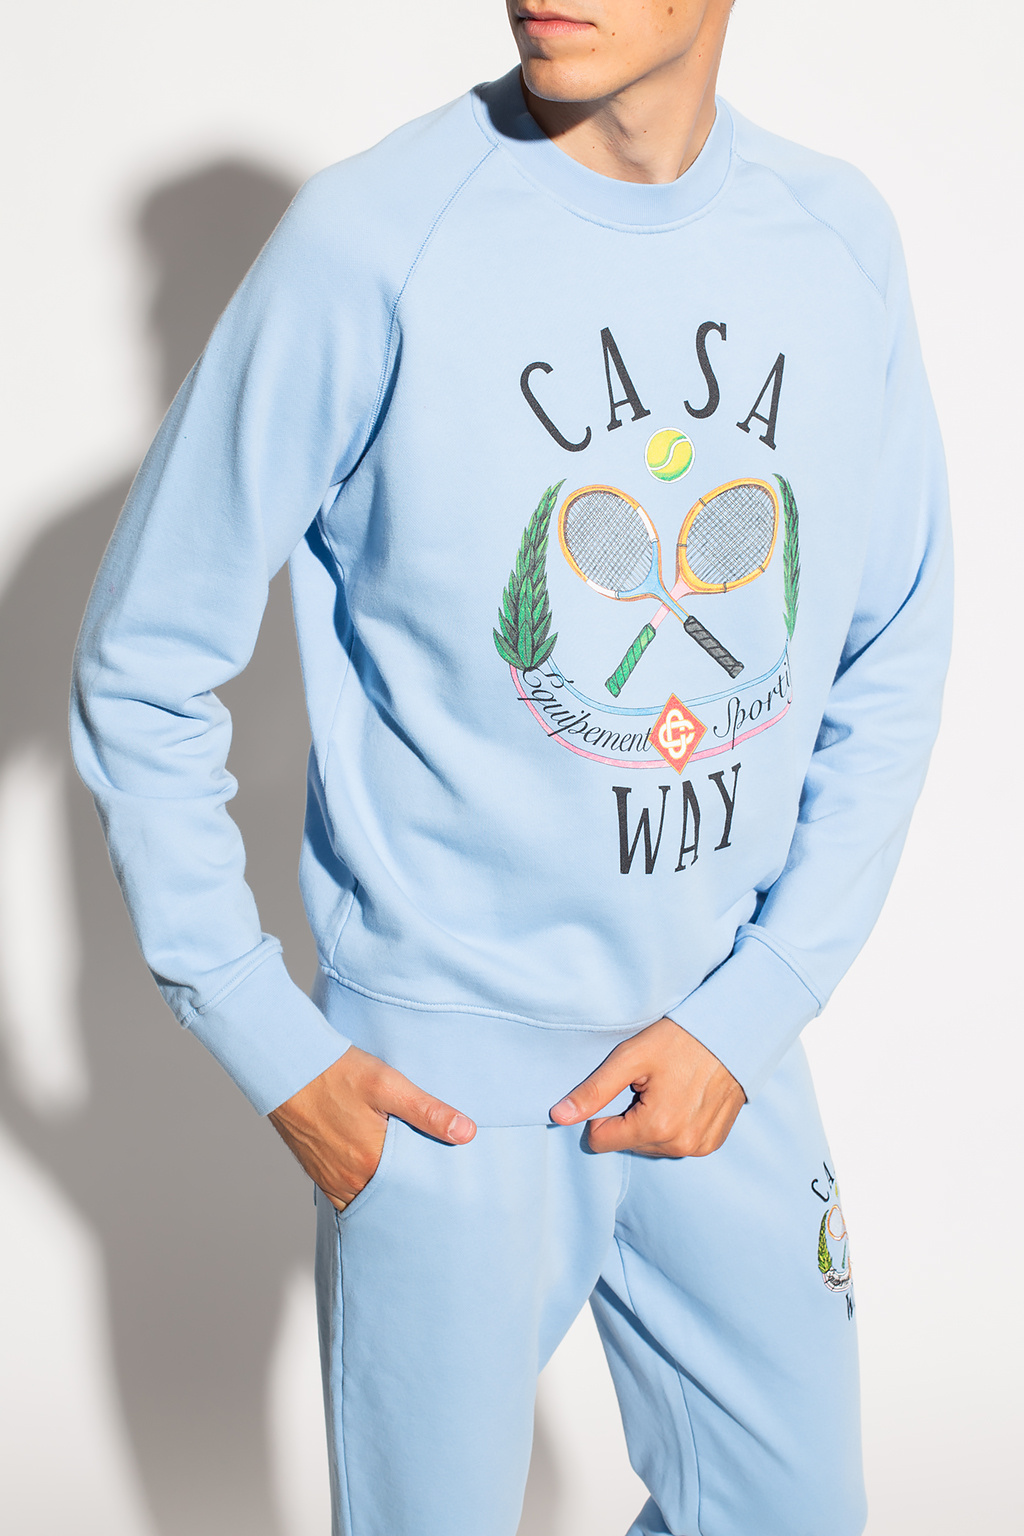 Casablanca Sweatshirt with Washable